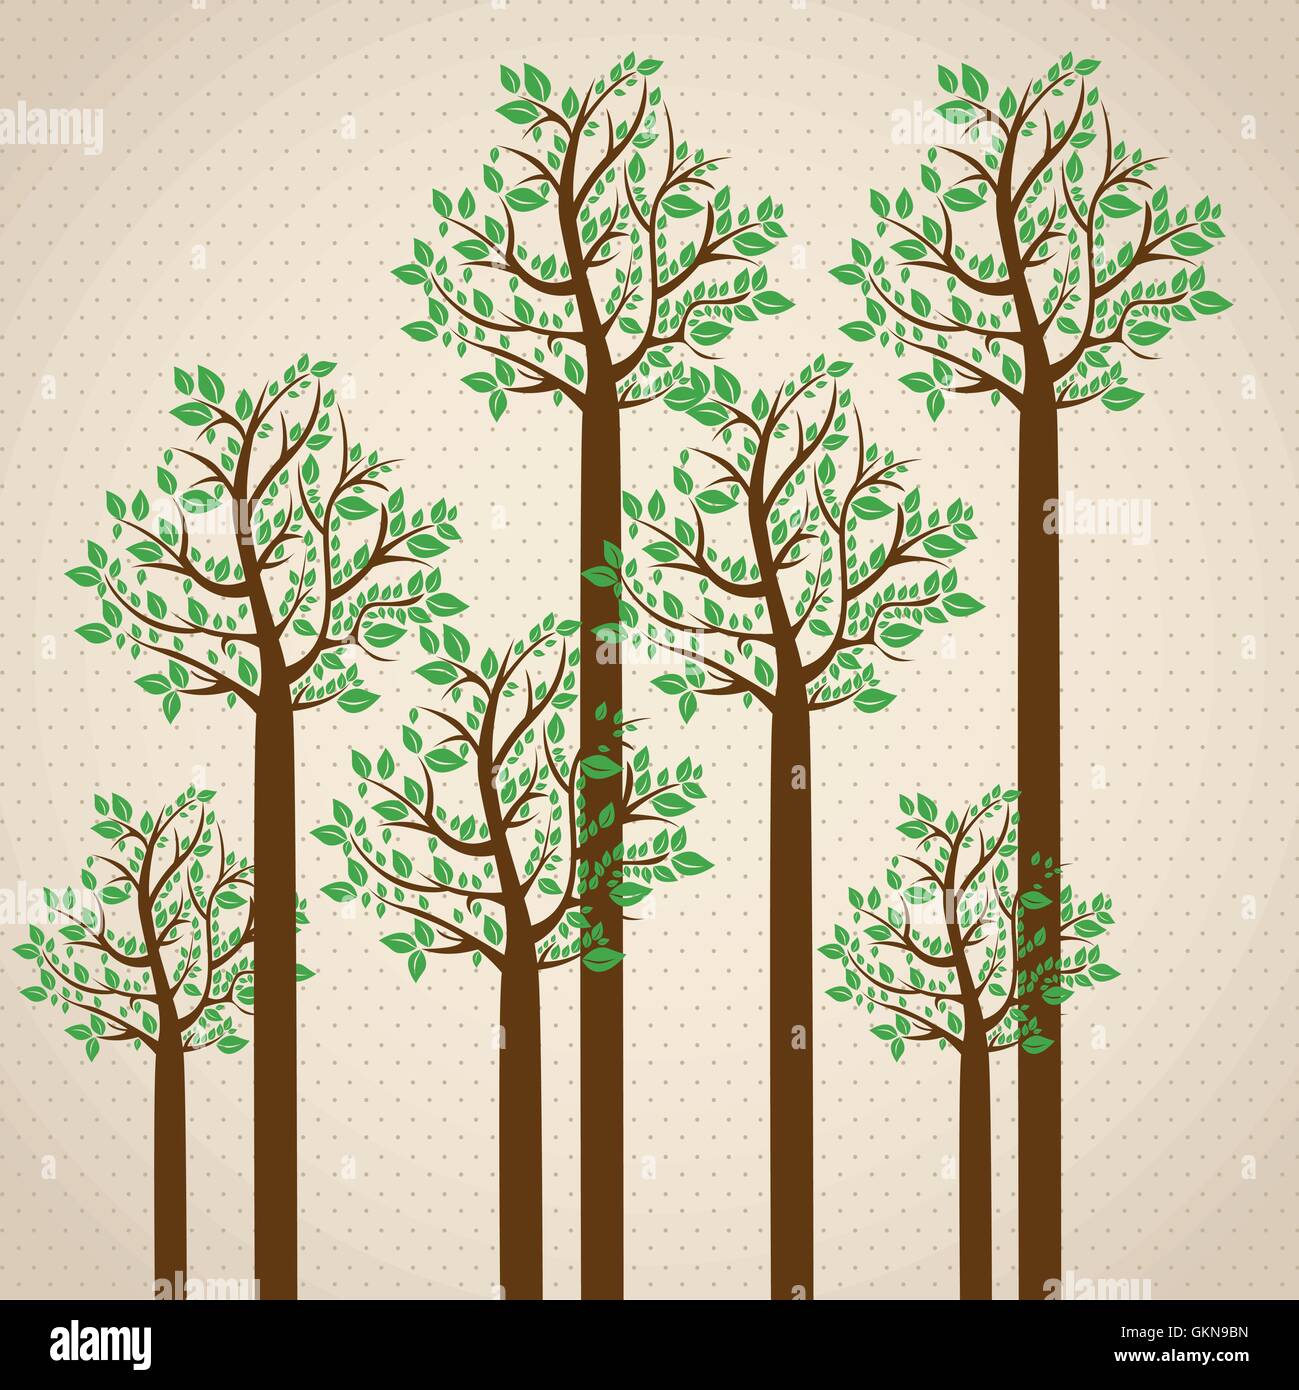 La saison des arbres dans le vert saison d'vector illustration Illustration de Vecteur